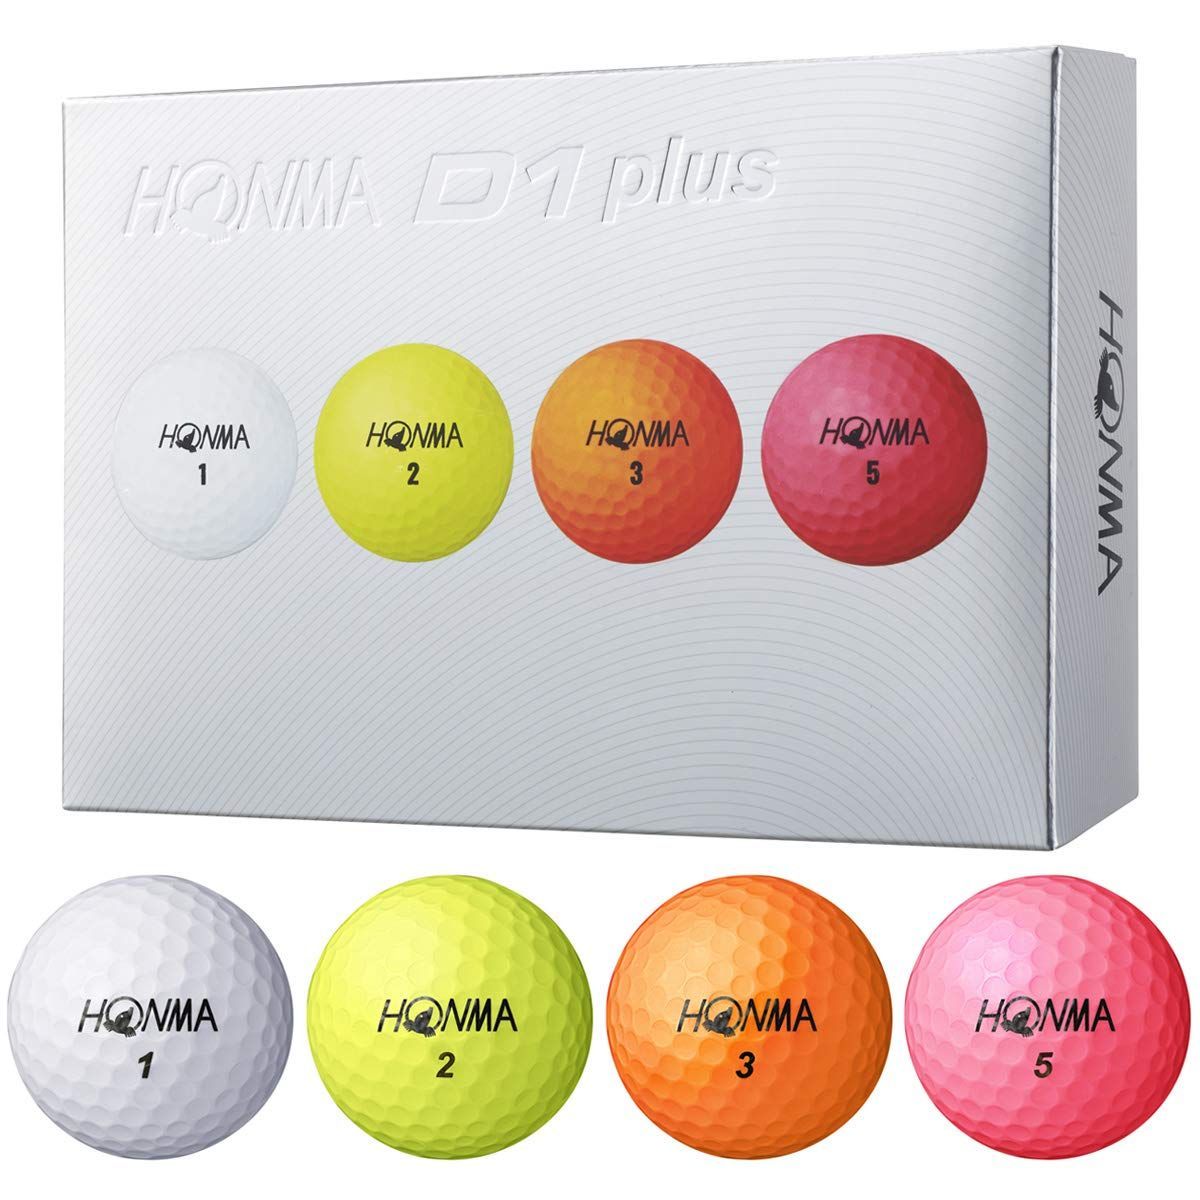 最上の品質な HONMA D1 ゴルフボール 1ダース ホンマゴルフ ホンマ ...